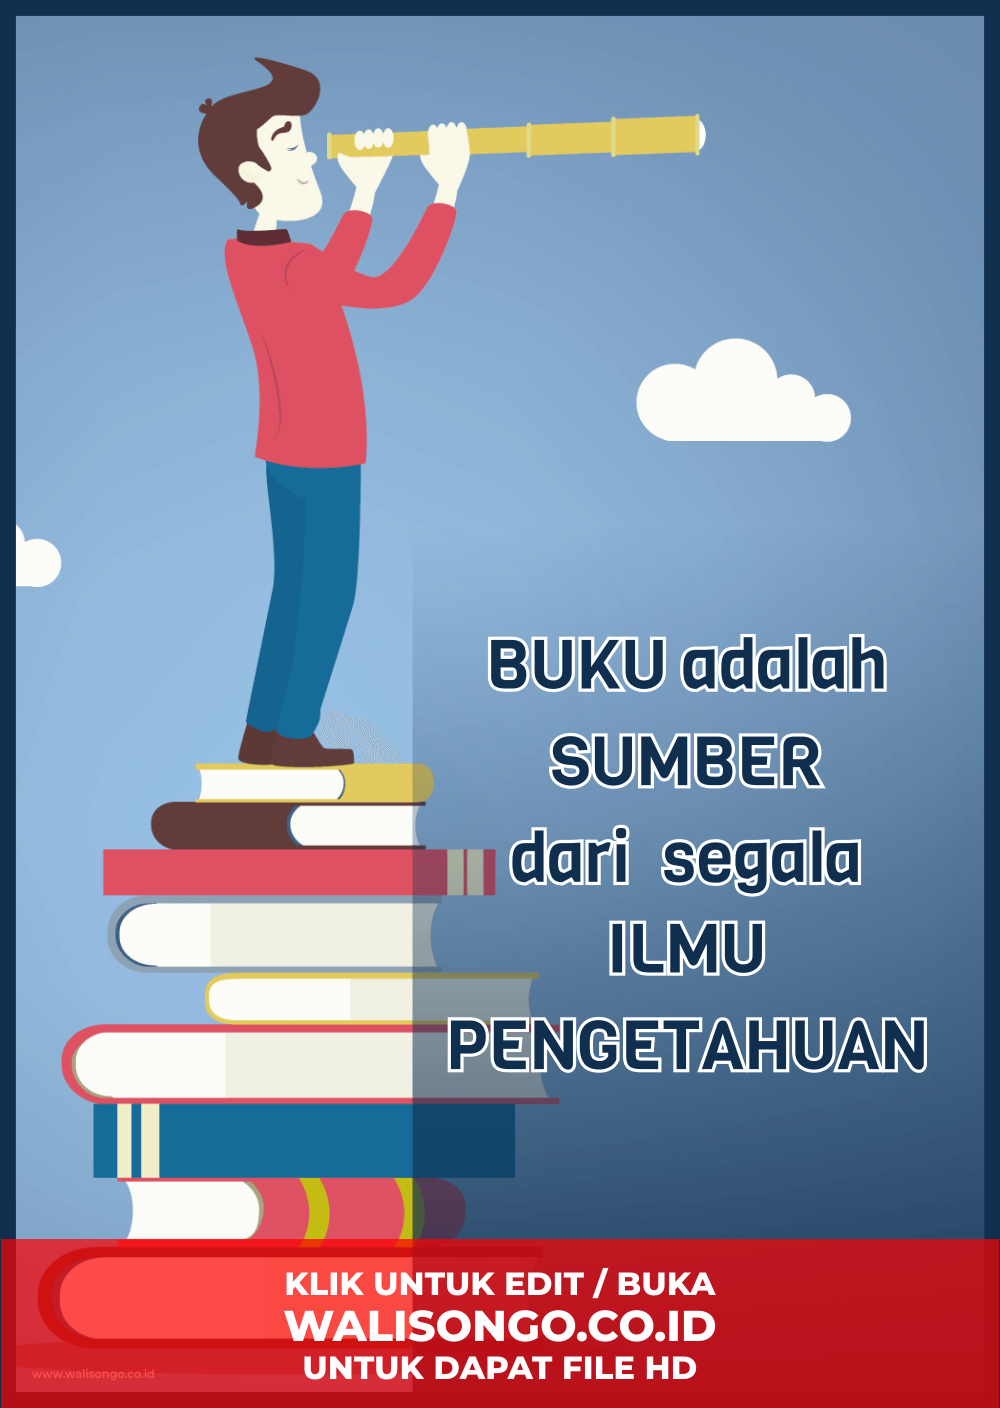 Desain Poster Pendidikan